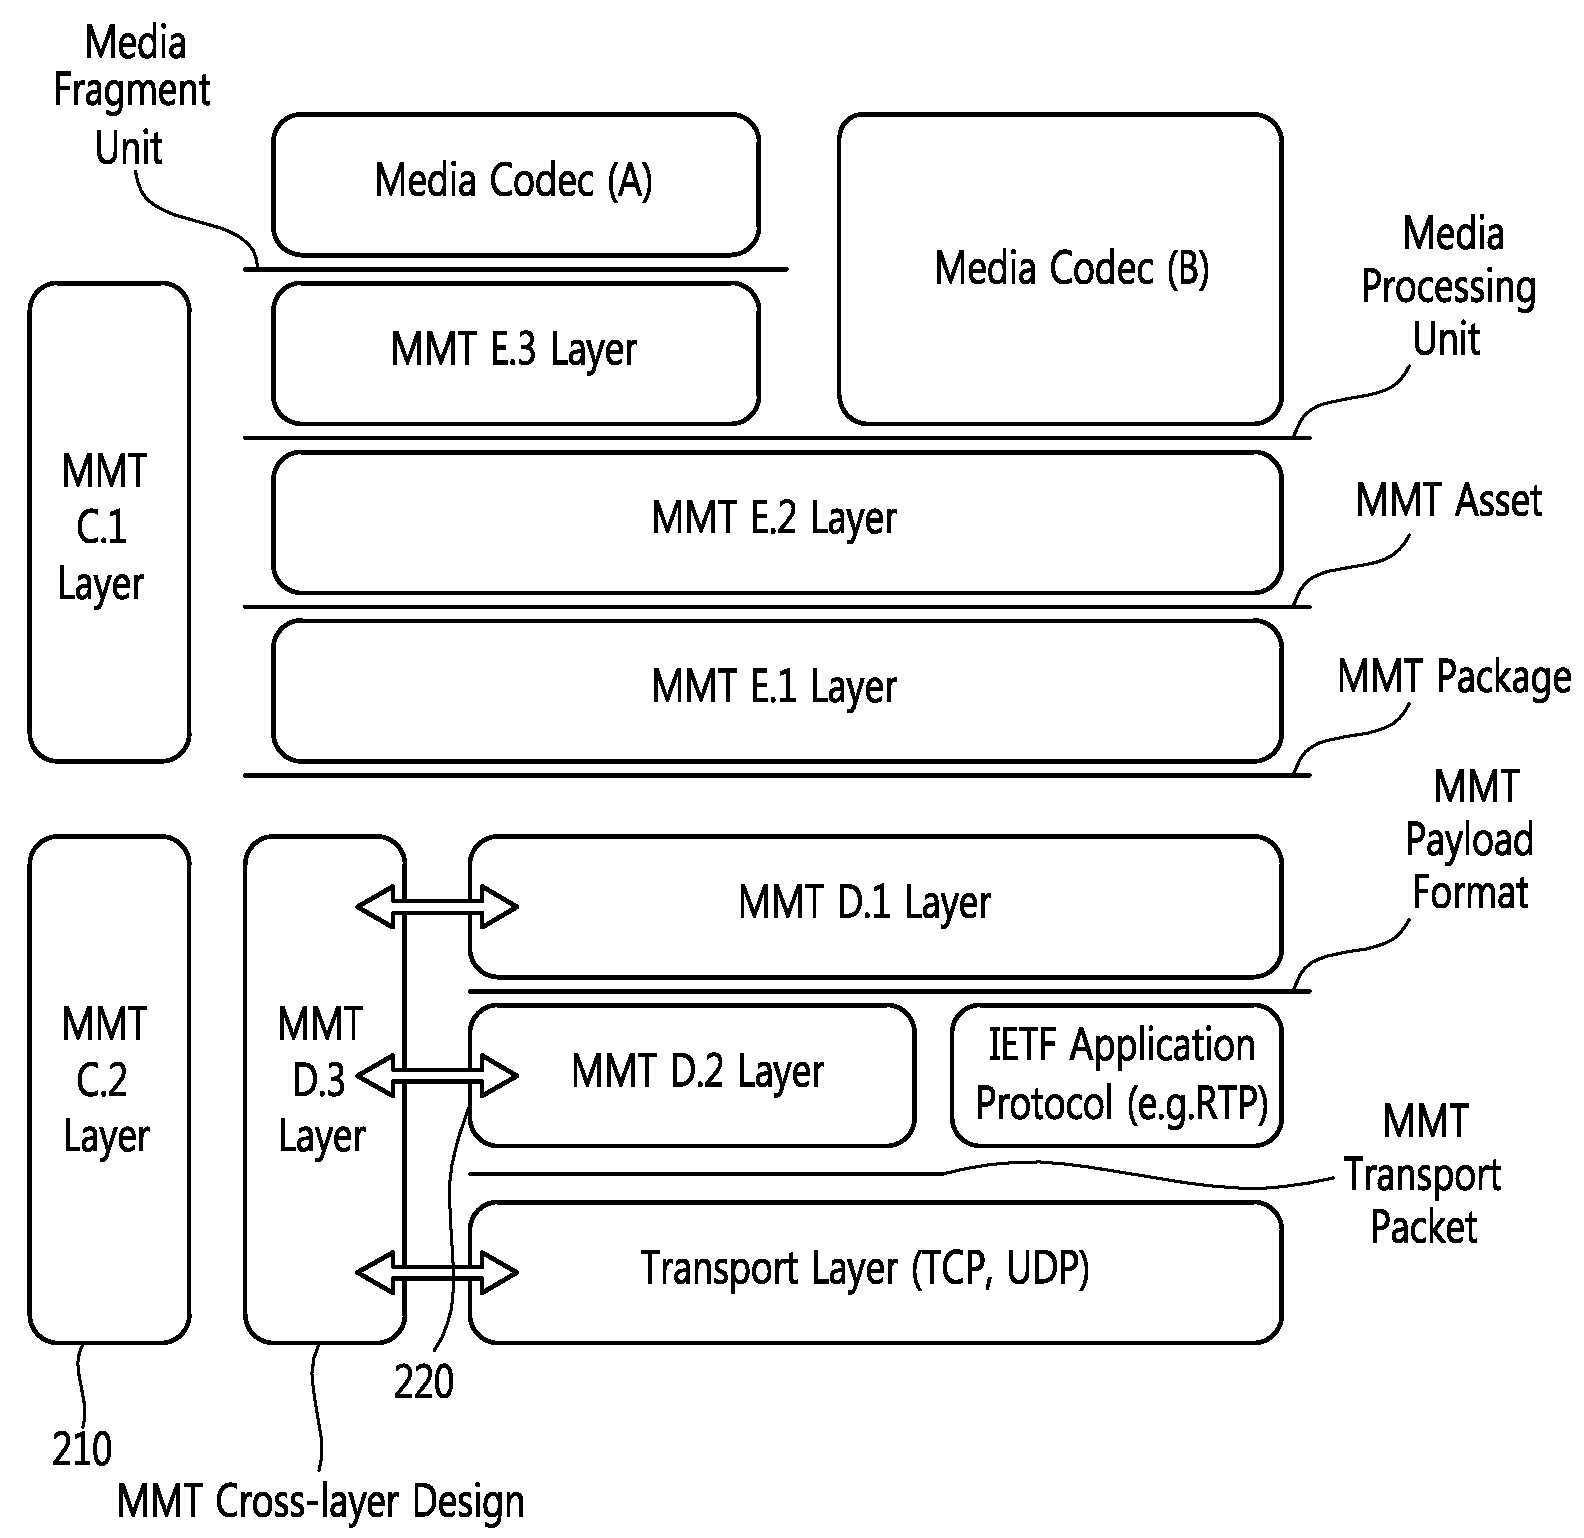 MMT 전송 패킷의 설정 방법 및 전송 방법